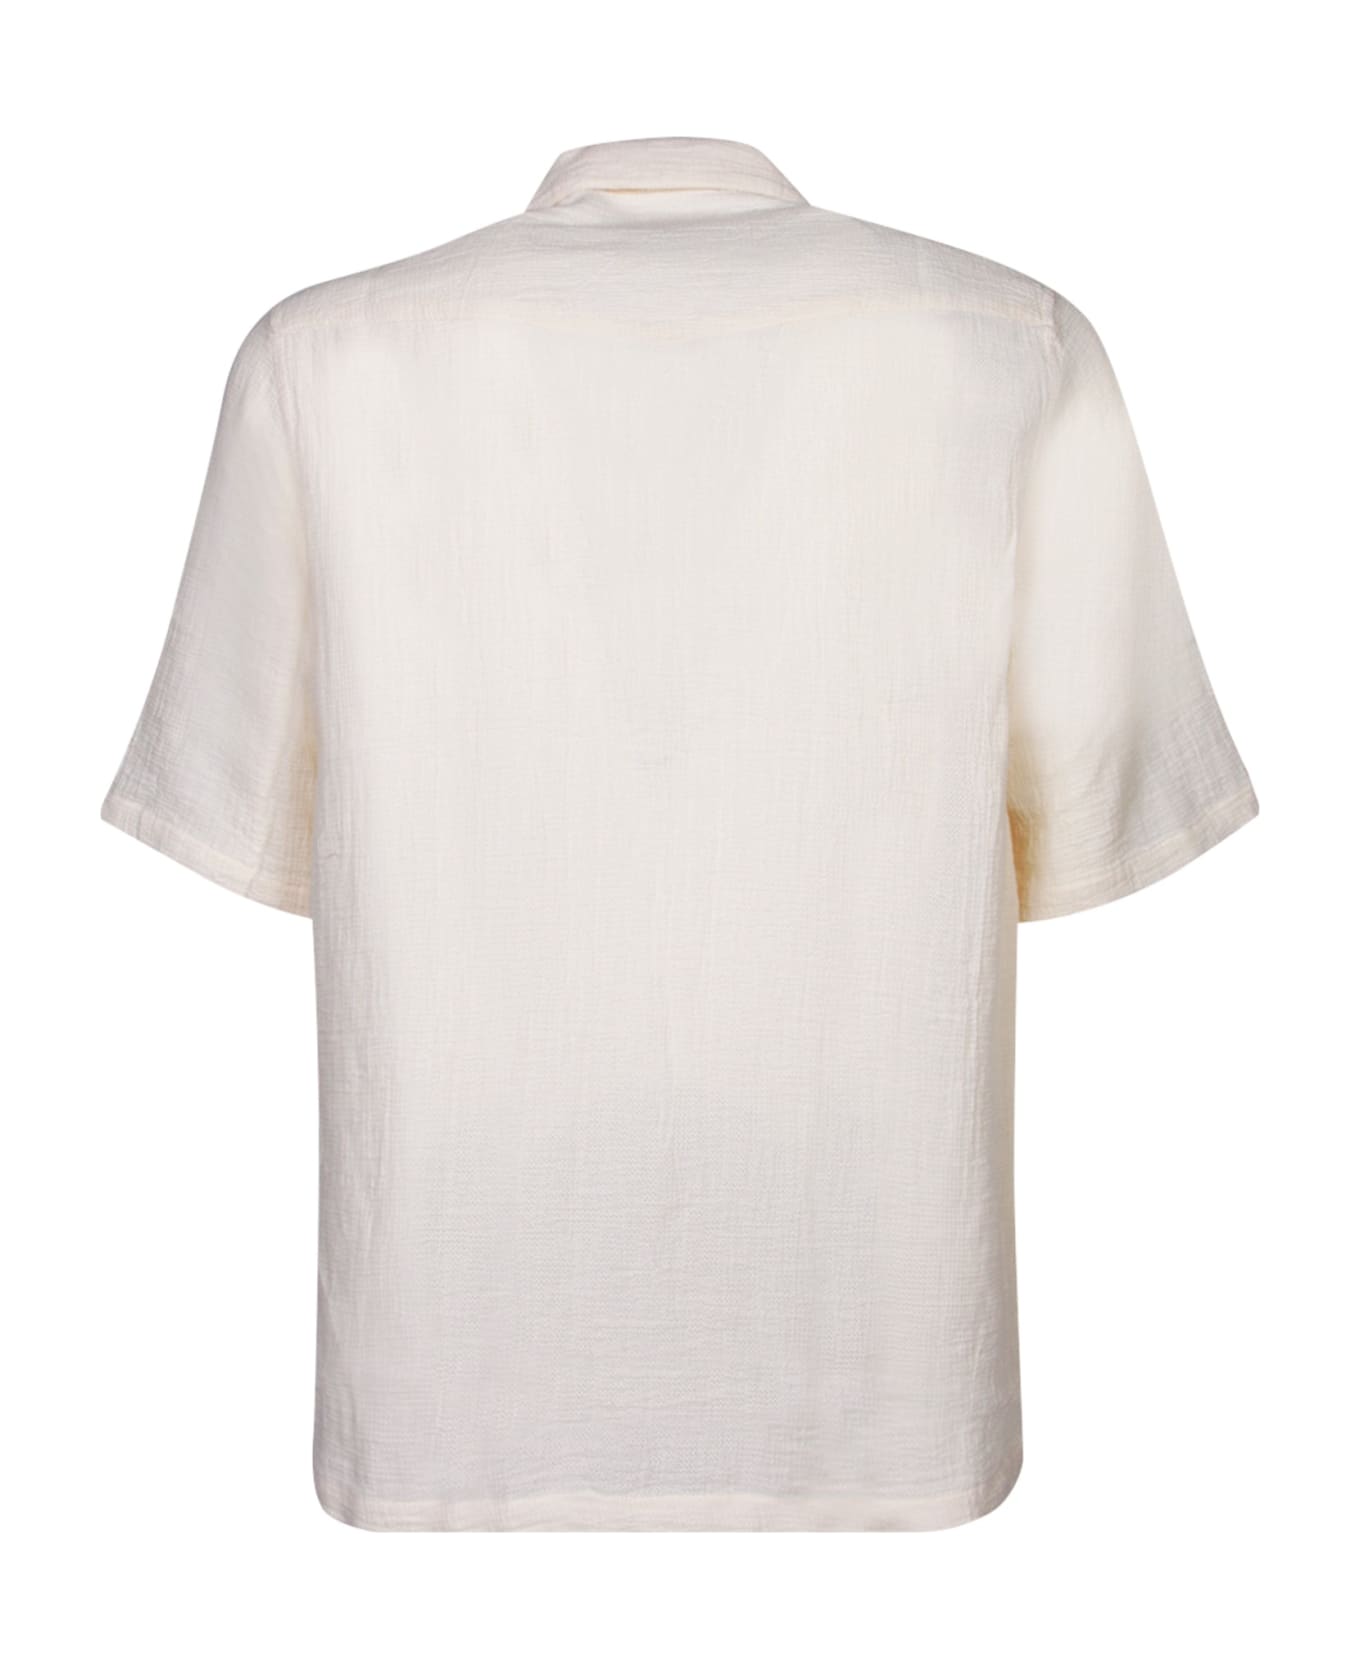 Officine Générale Short Sleeves White Shirt - White